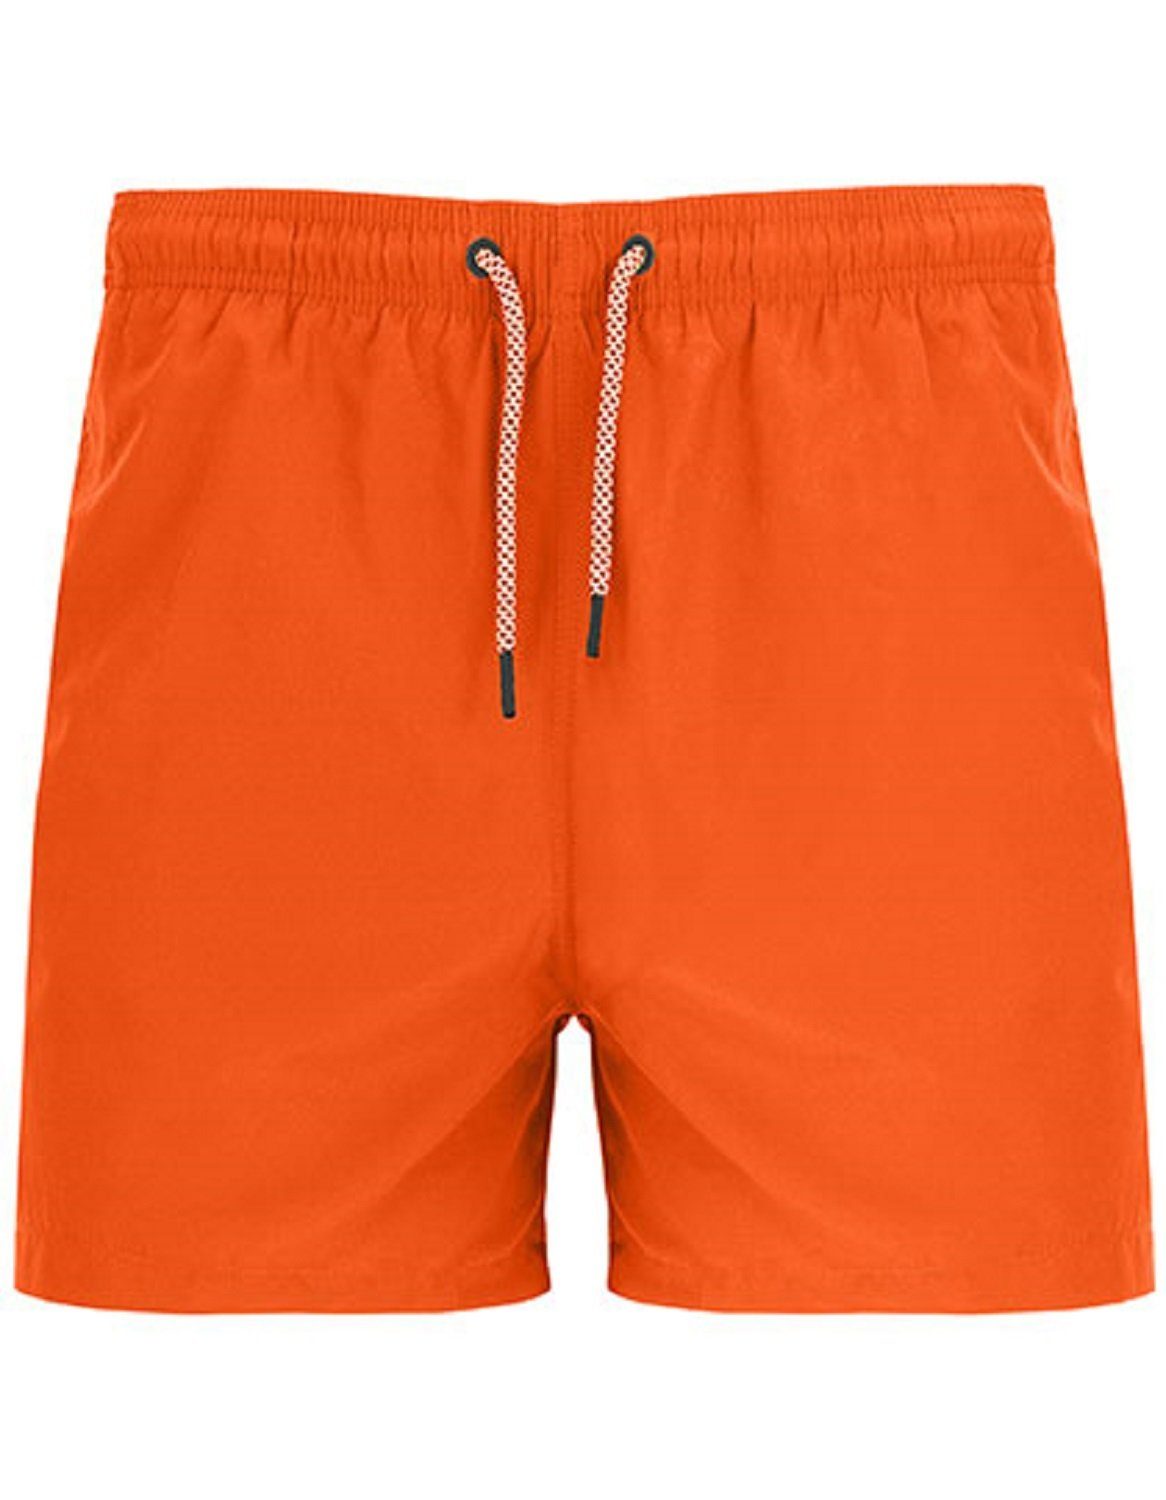 Roly Sport Badehose Herren Badeshorts / Badehose mit zwei Seitentaschen verschiedene Farben - Gr. S bis XXL Orange